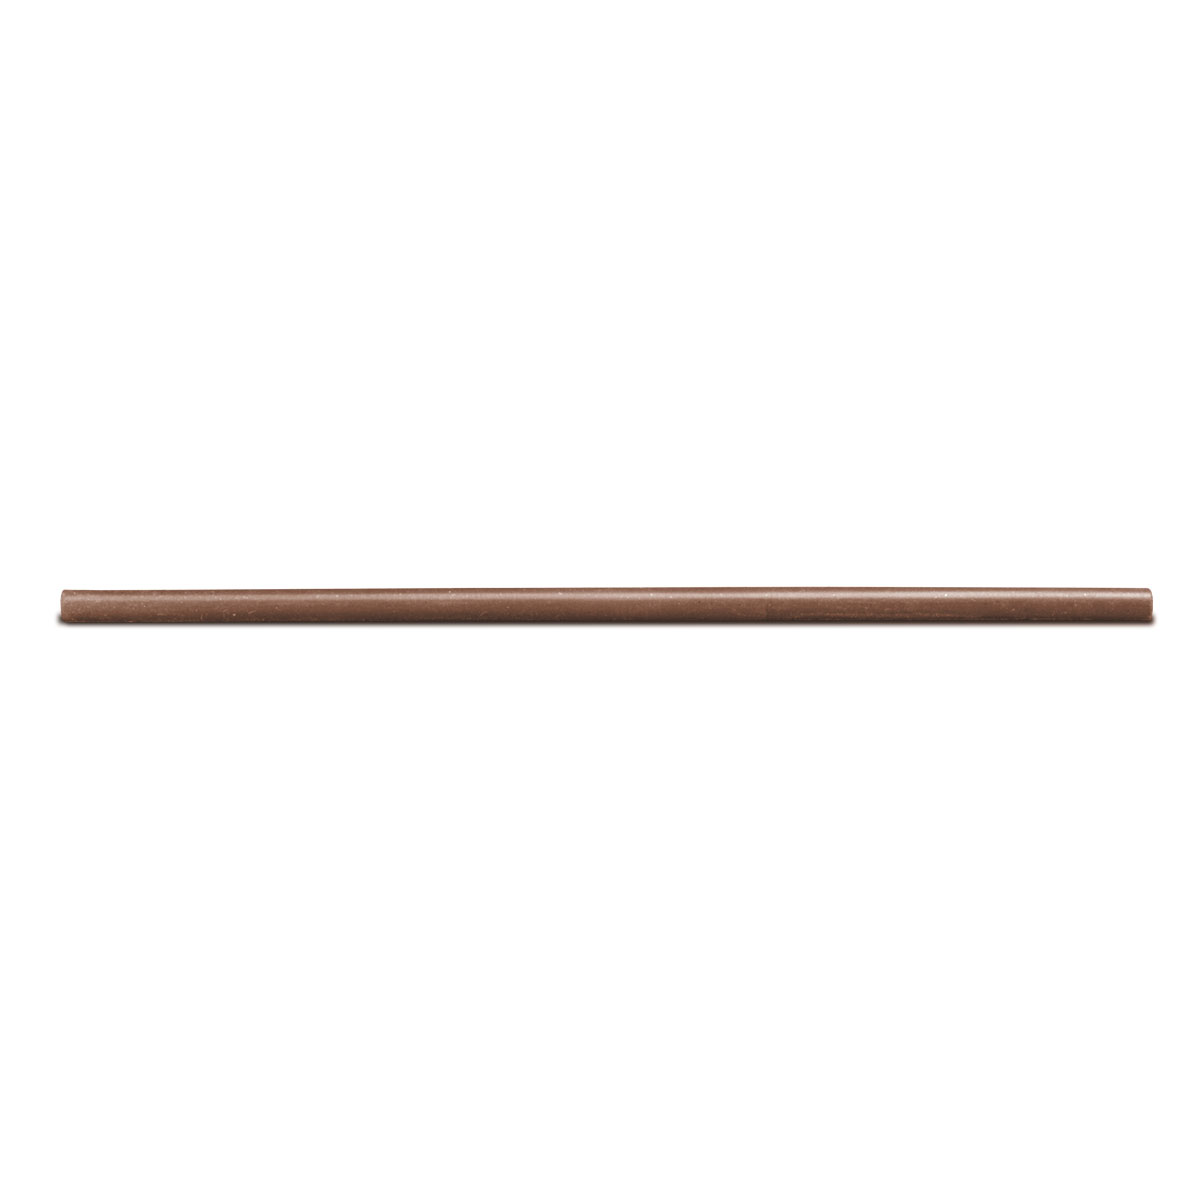 Cratex bâton de broyage, Ø 4,8 x 150 mm, Taille du grain 120, Rond, Brun clair